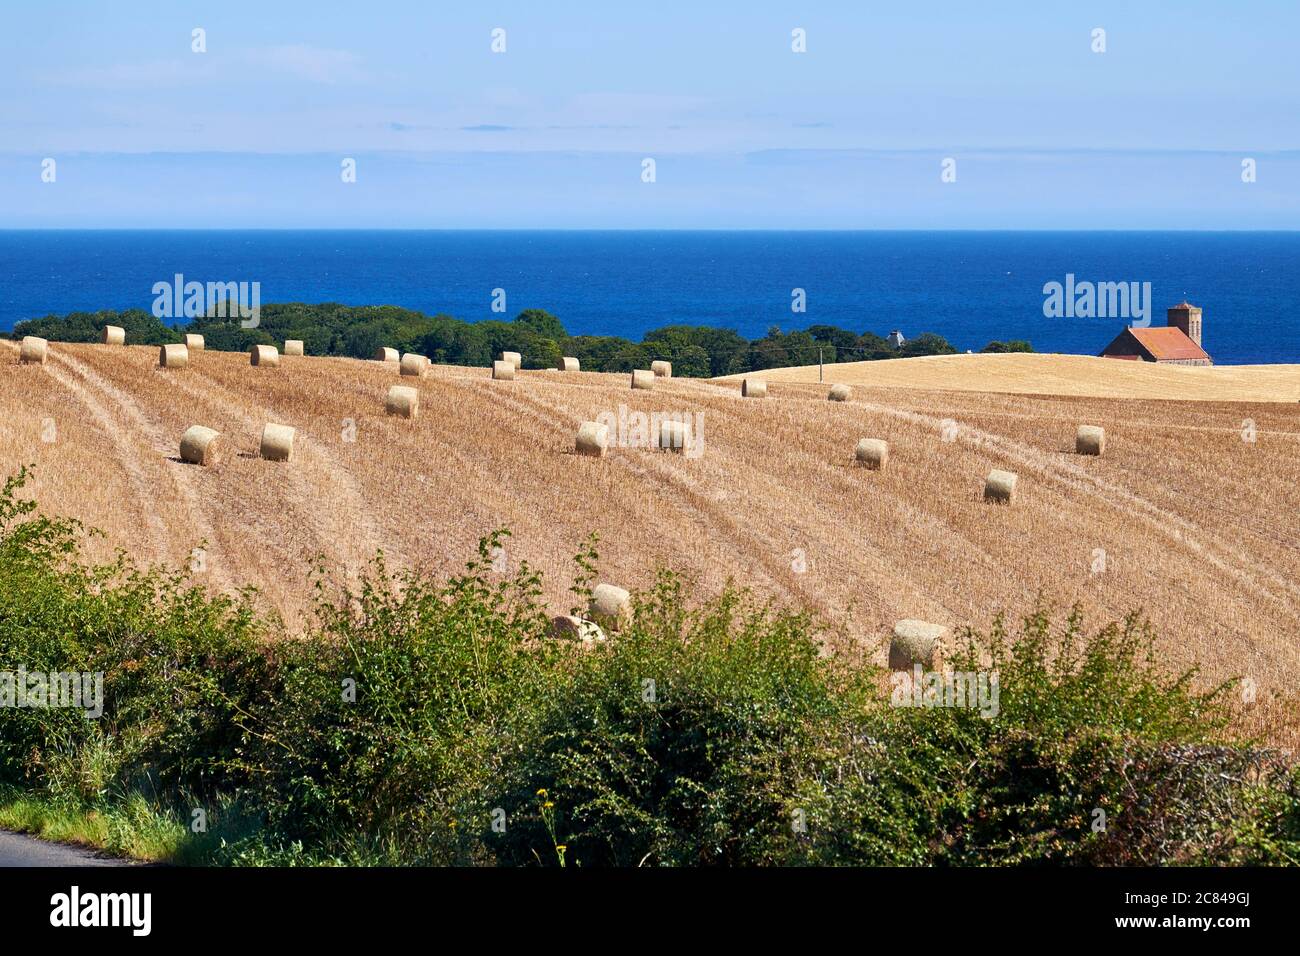 Landwirtschaftliche Landschaft in einer Küstenlage von Heuballen auf Ackerland mit Haus und Meer im Hintergrund Stockfoto